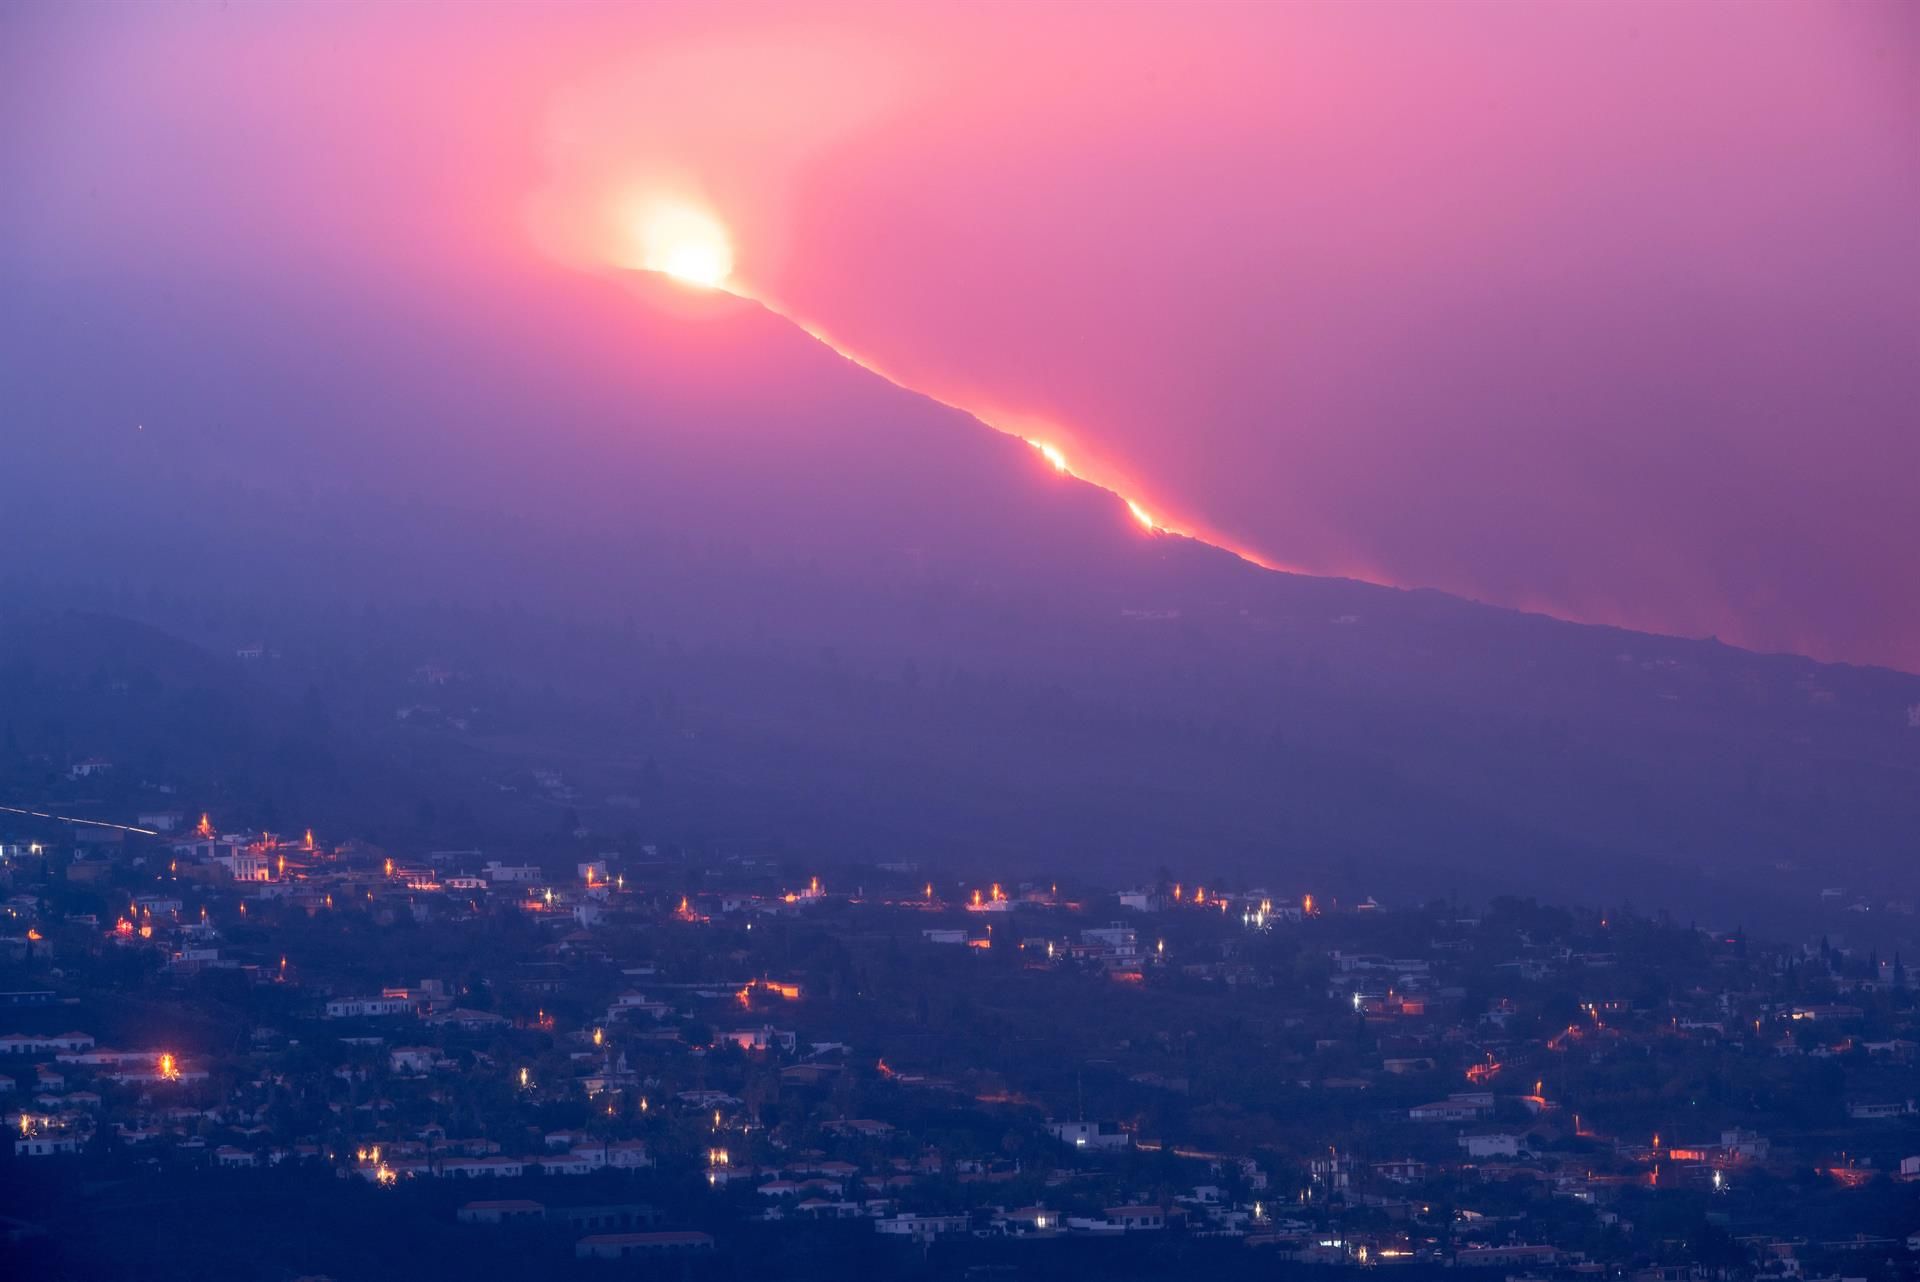 El nuevo volcán de Cumbre Vieja, en La Palma, comienza este miércoles a las 15.13 horas su décimo octavo día de erupción. Imagen del volcán y de su colada principal tomada al amanecer desde el Valle de Aridane. EFE/Carlos de Saá